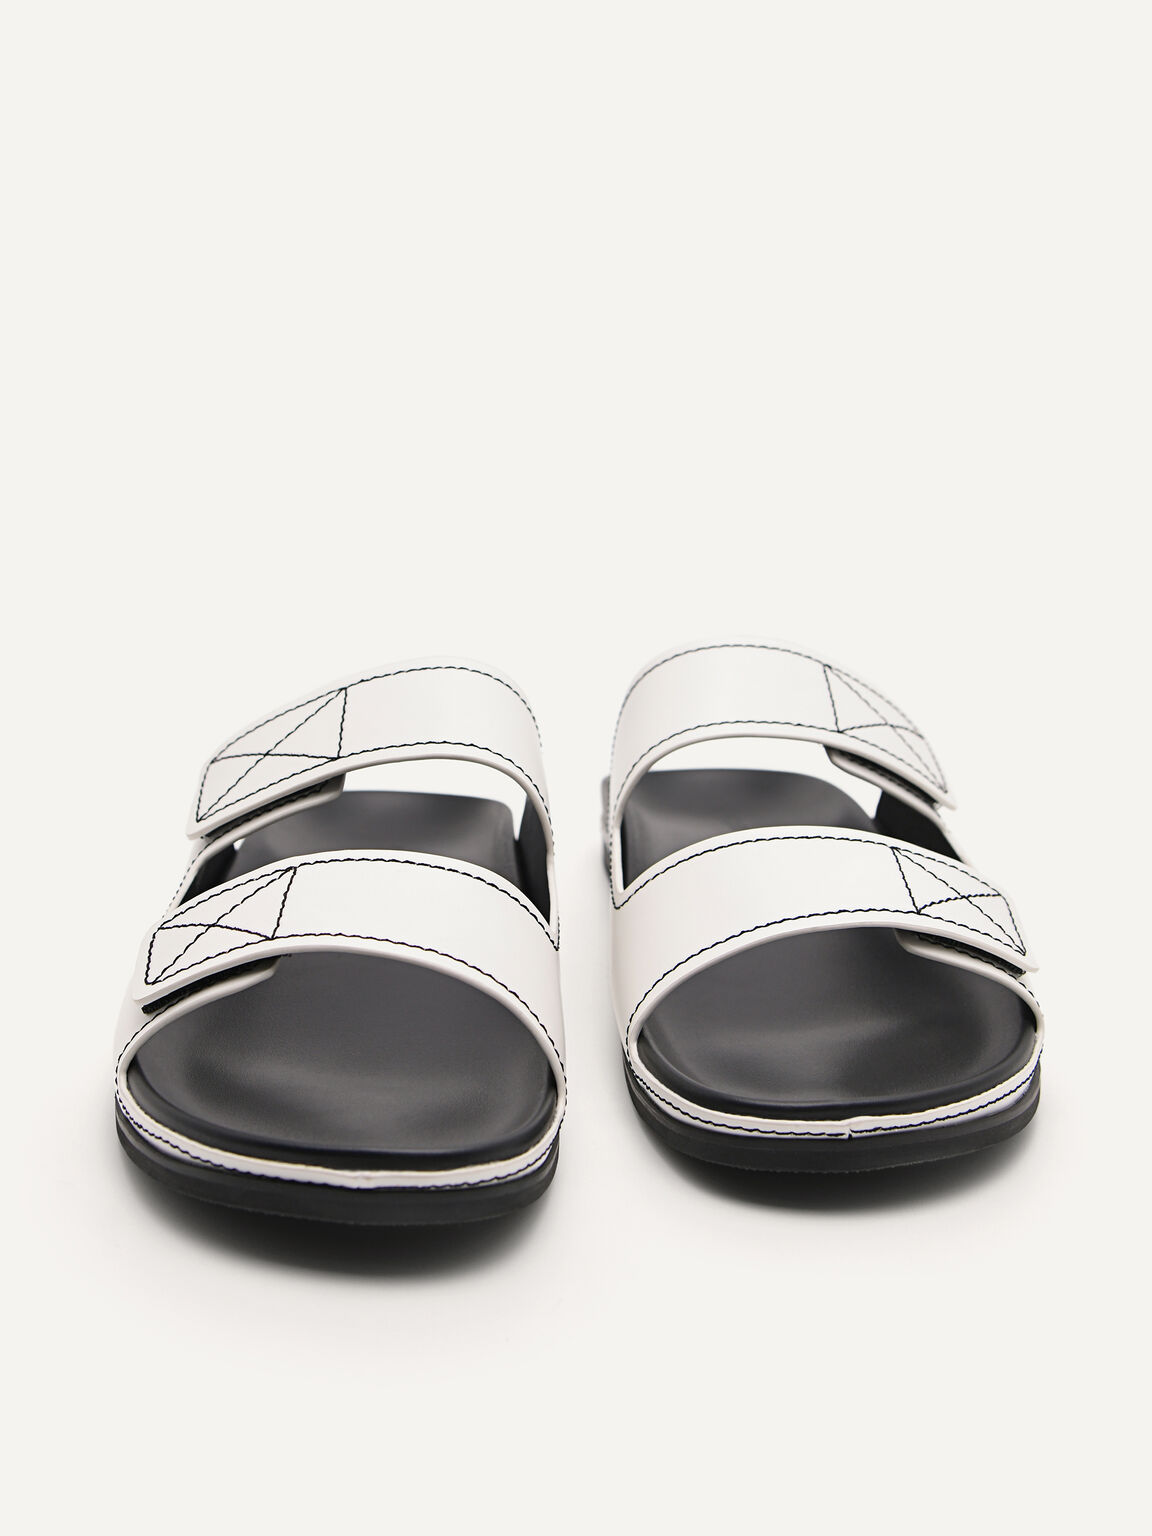 Slide Sandals, White